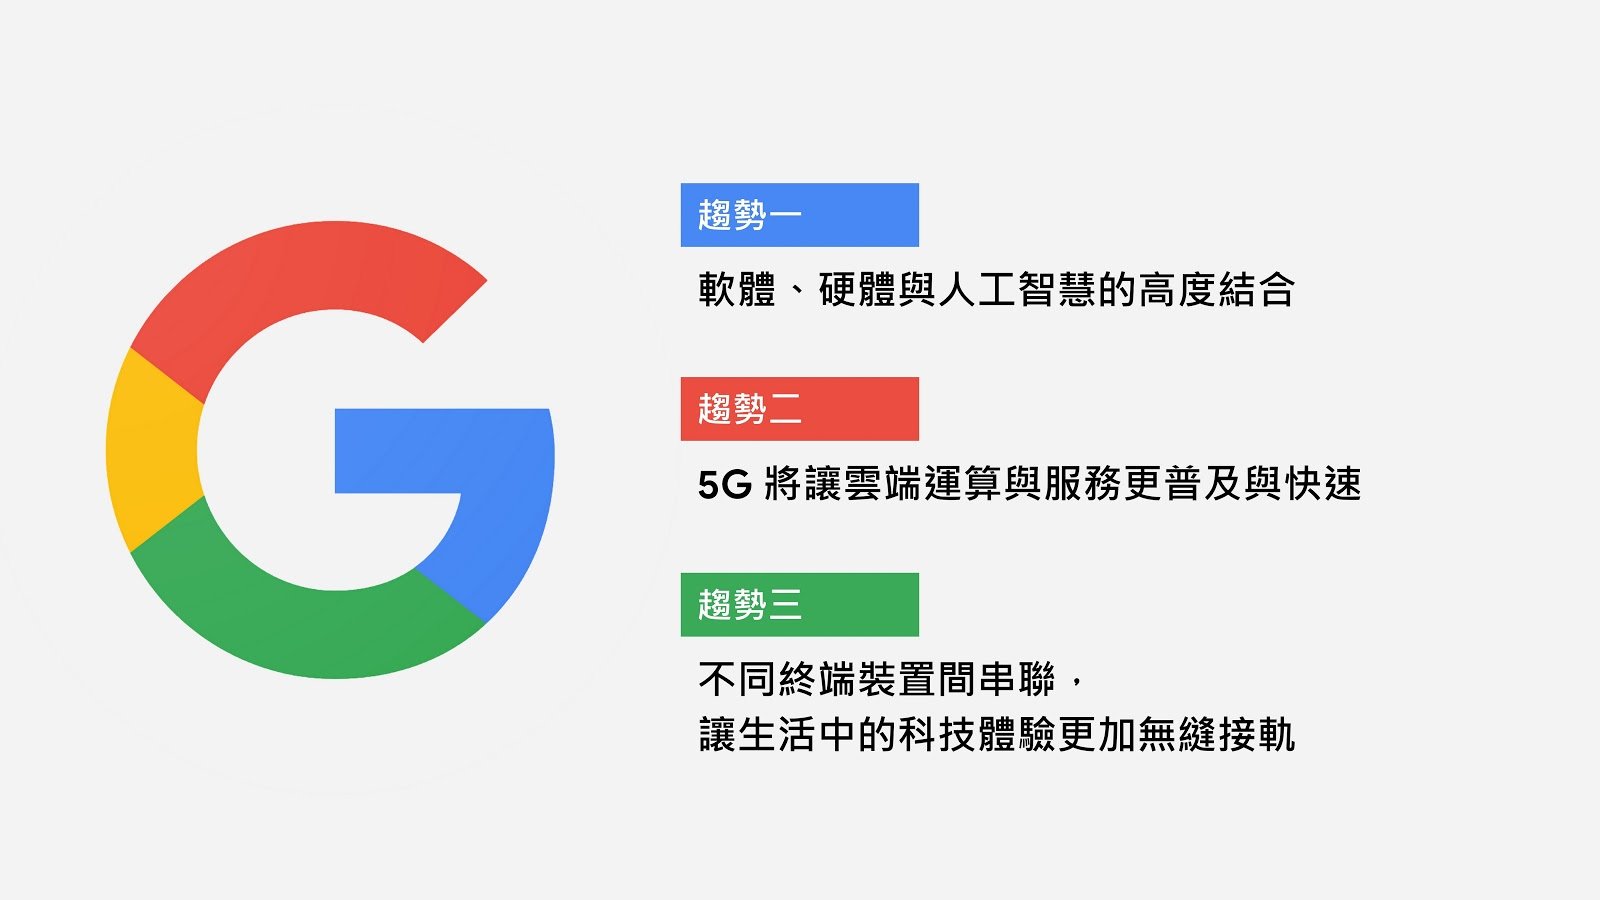 Google 台灣團隊解密 Google 硬體願景與產品定位